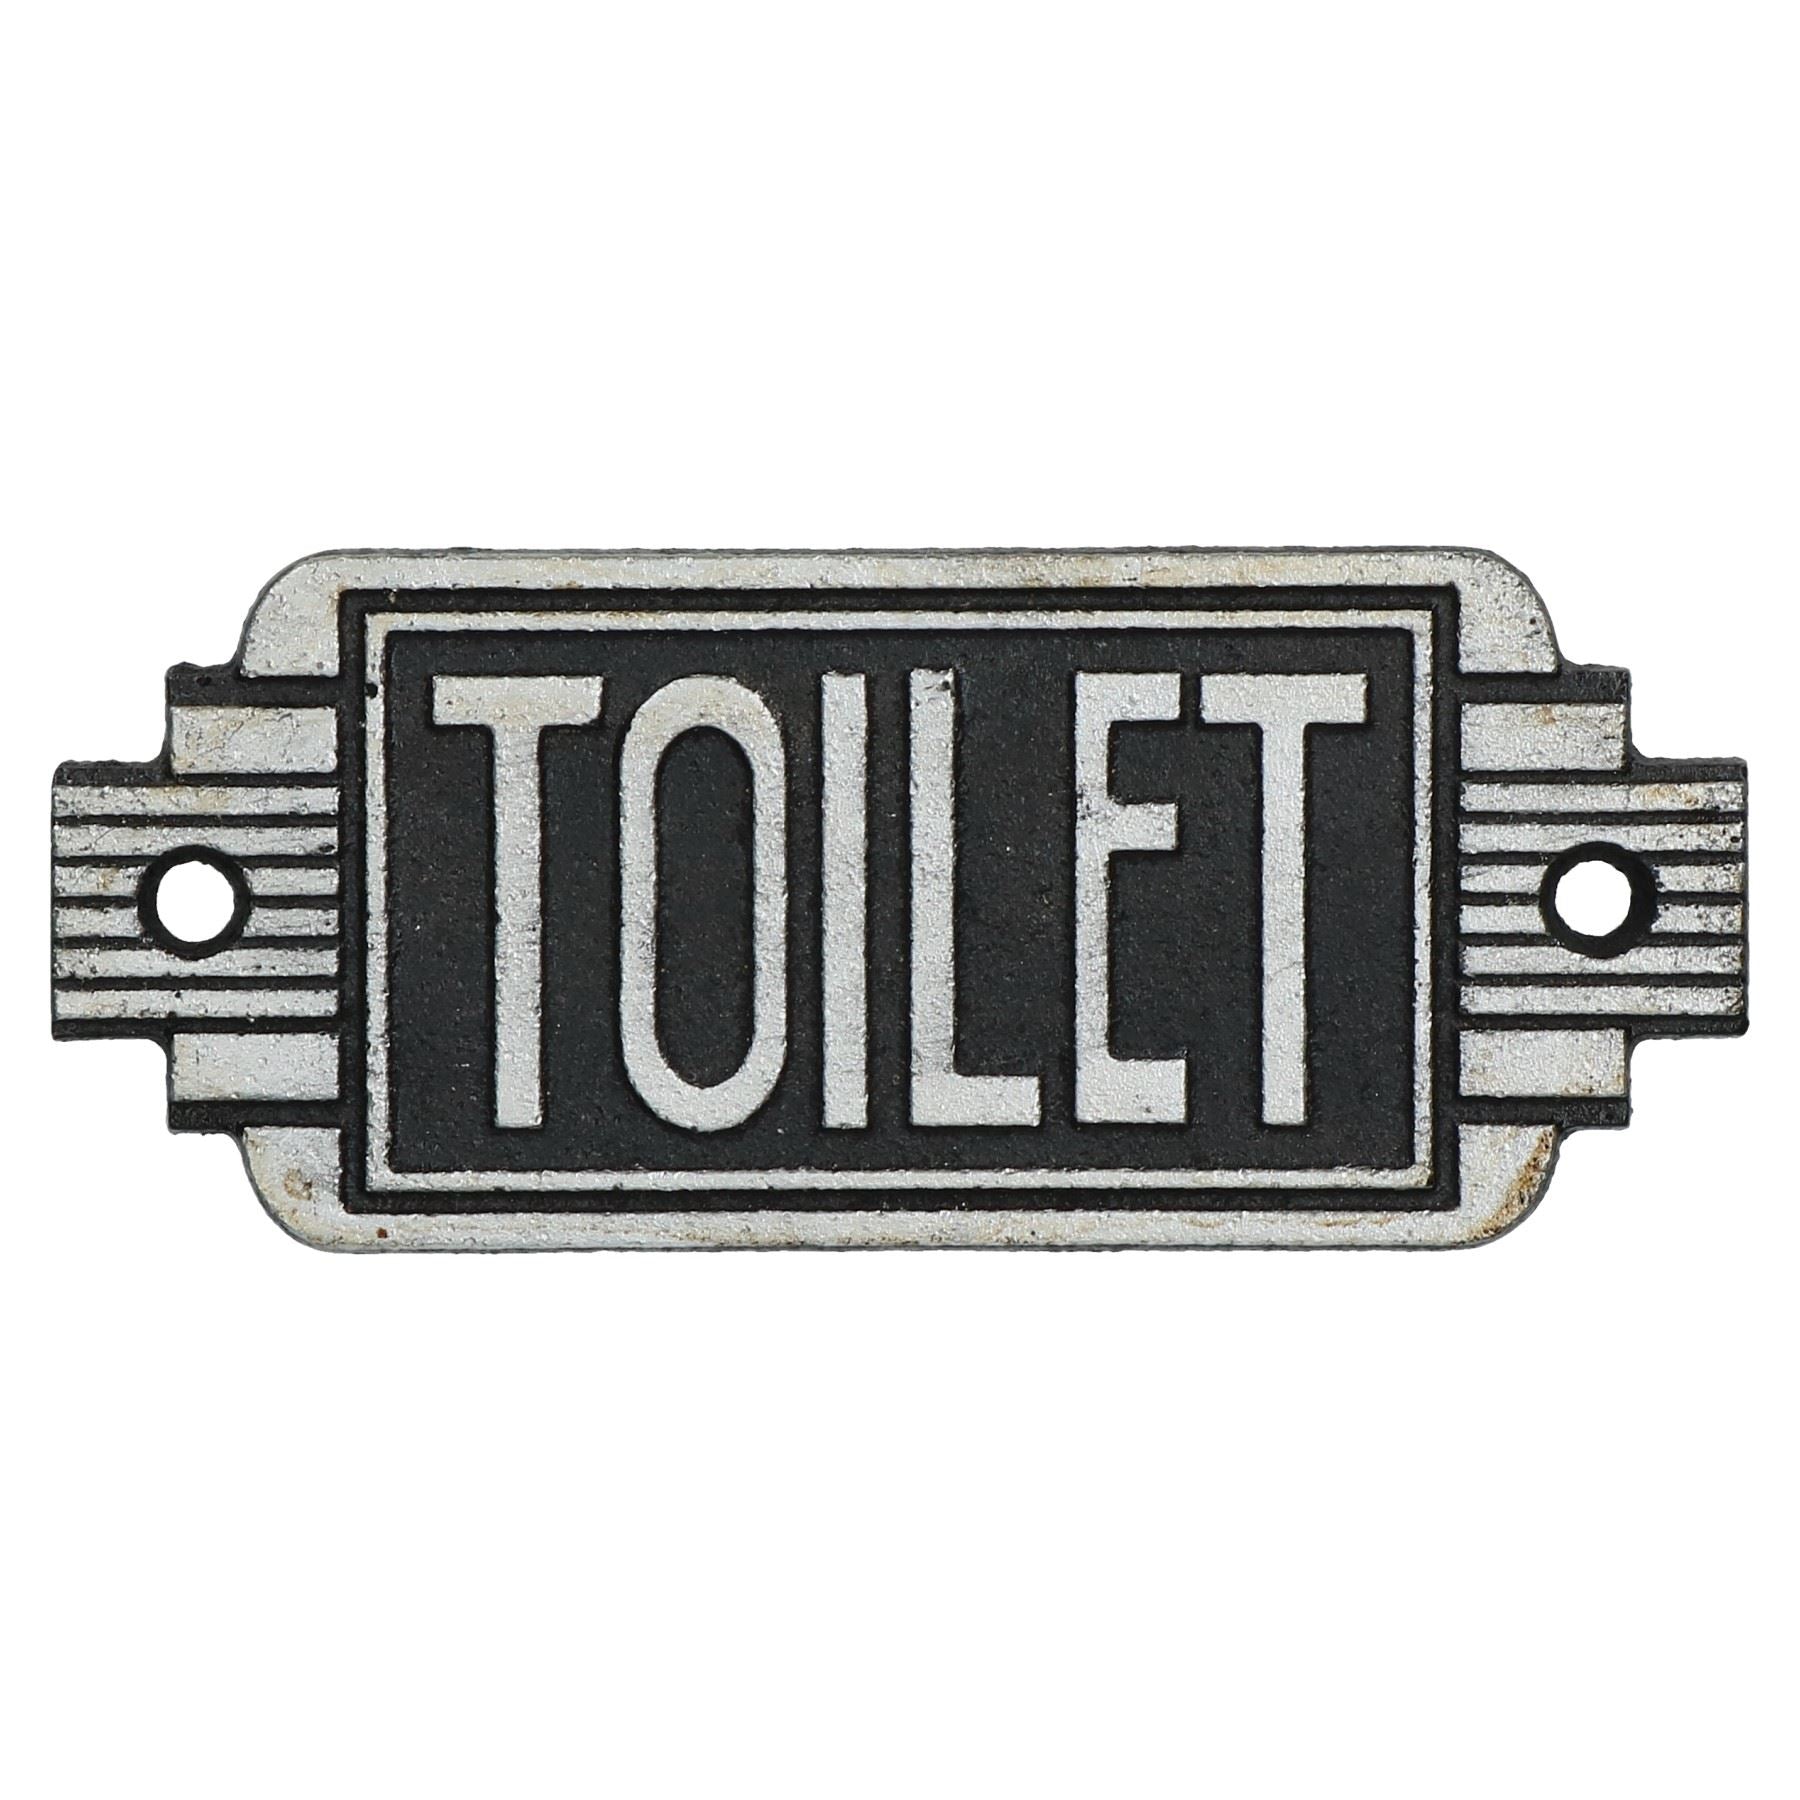 Art Deco Toilet Sign Cast Iron Sign Plaque Door Wall Cafe Shop Pub Hotel Bar Loo